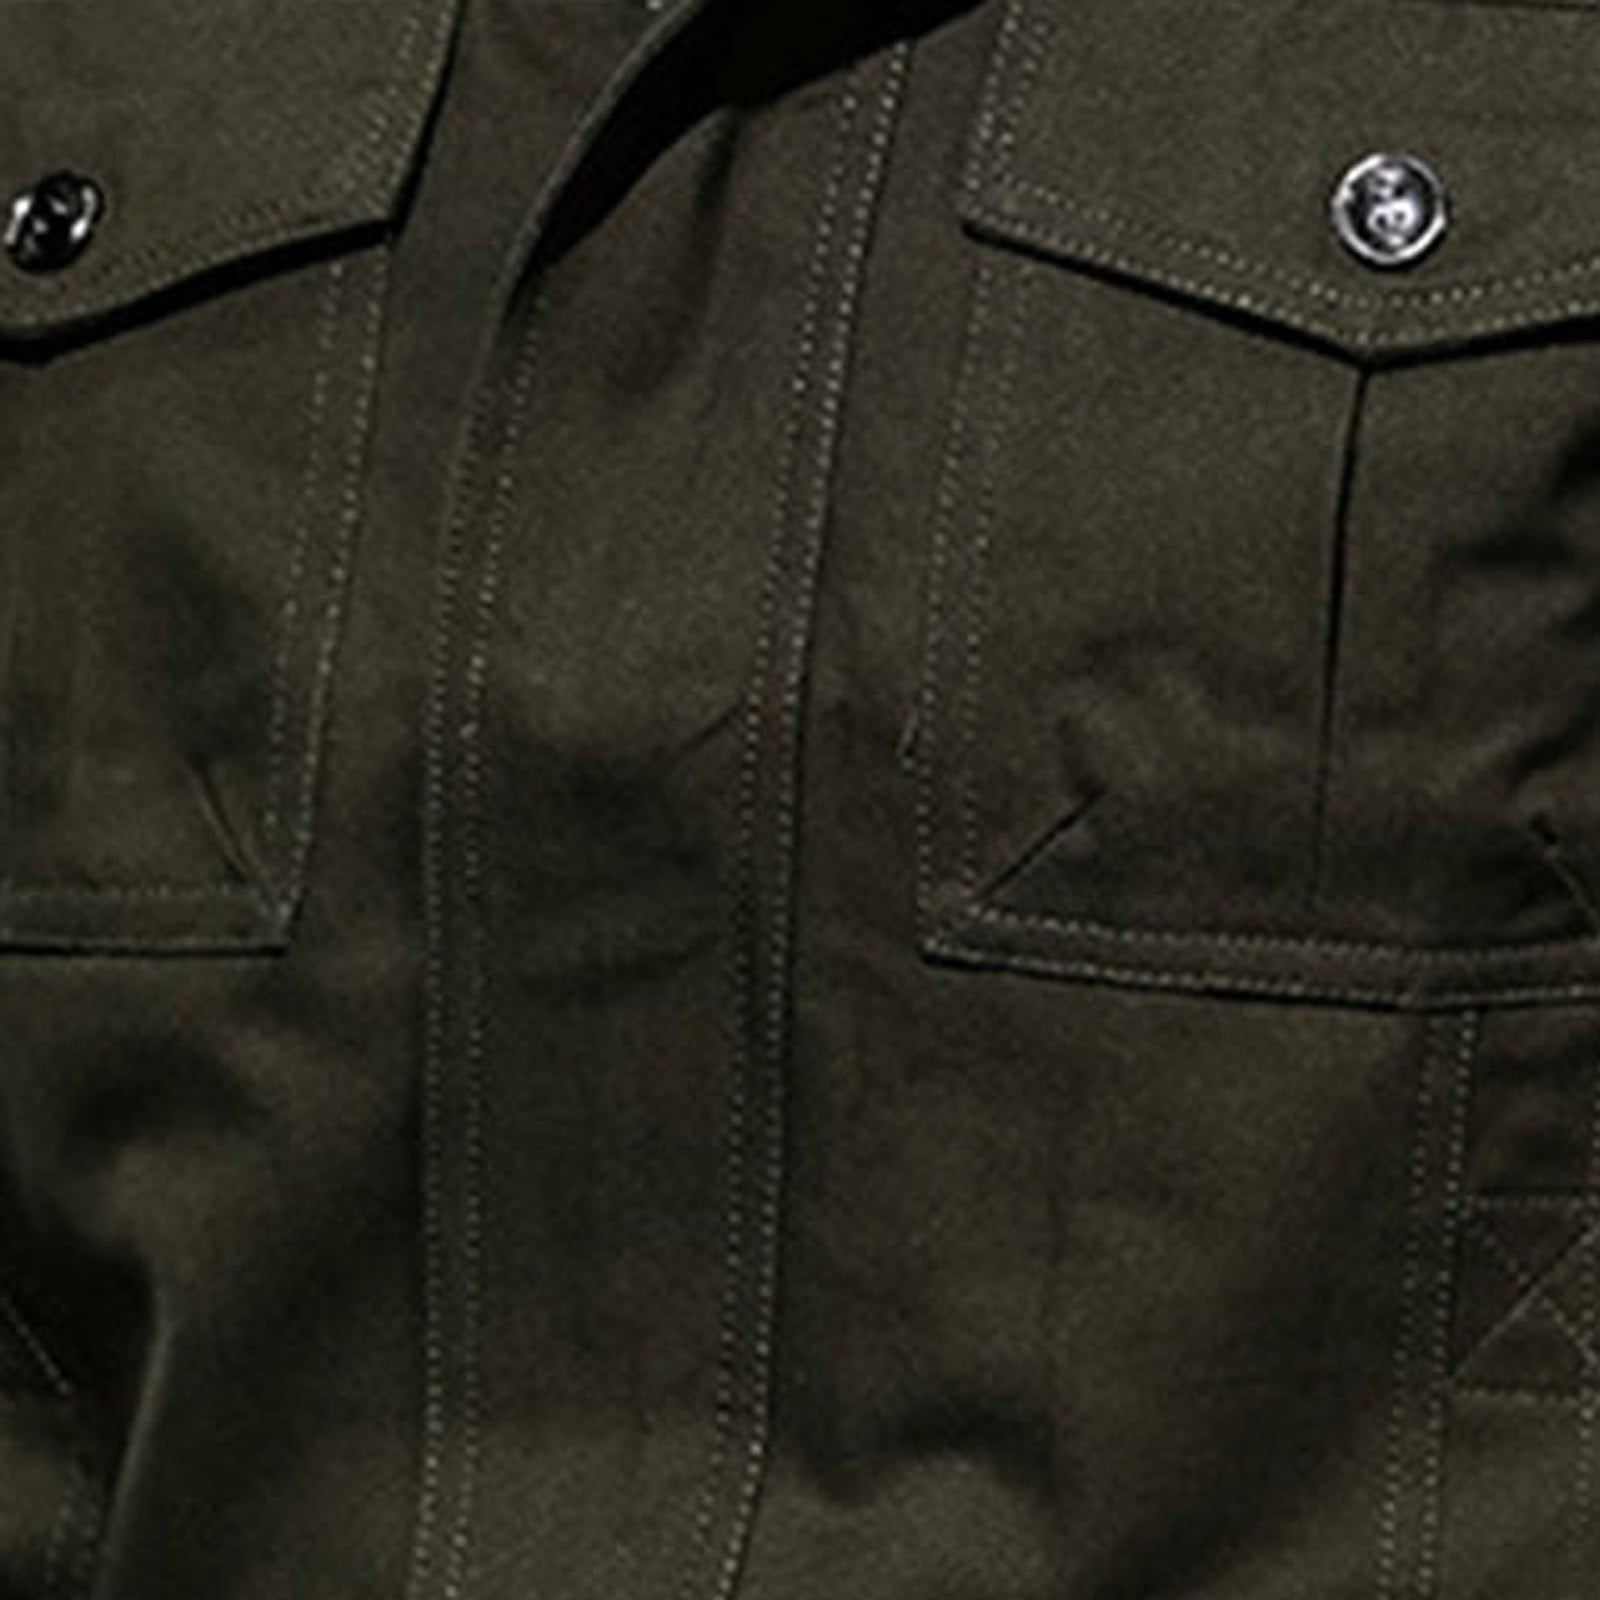 Vintage 1960s US Army M-1951 Field Jacket Cotton Sateen Military Vietnam  War era | eBay